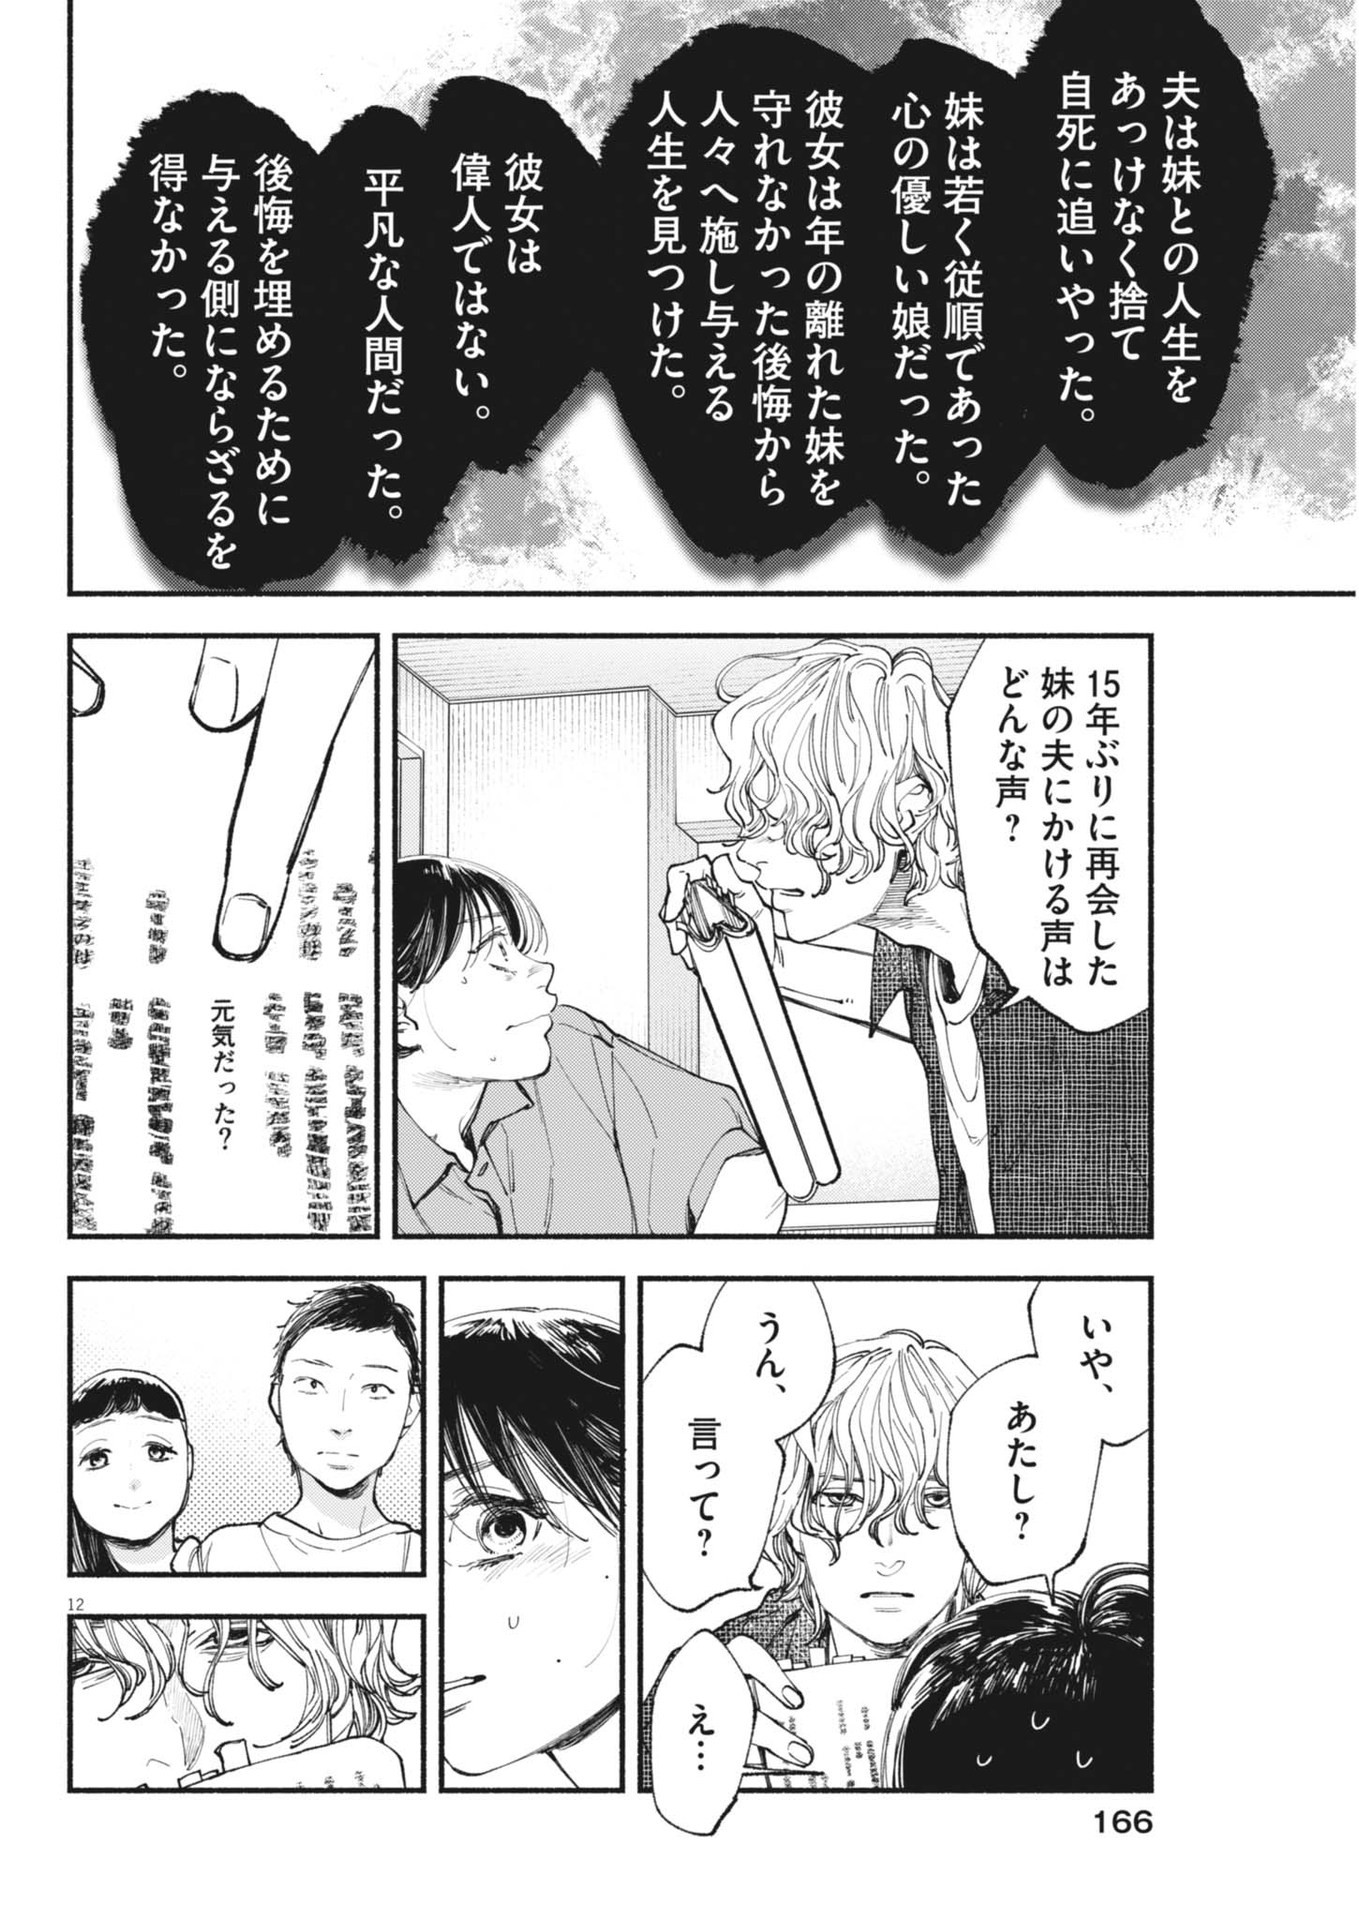 Konoyo wa Tatakau Kachi ga Aru  - Chapter 28 - Page 12